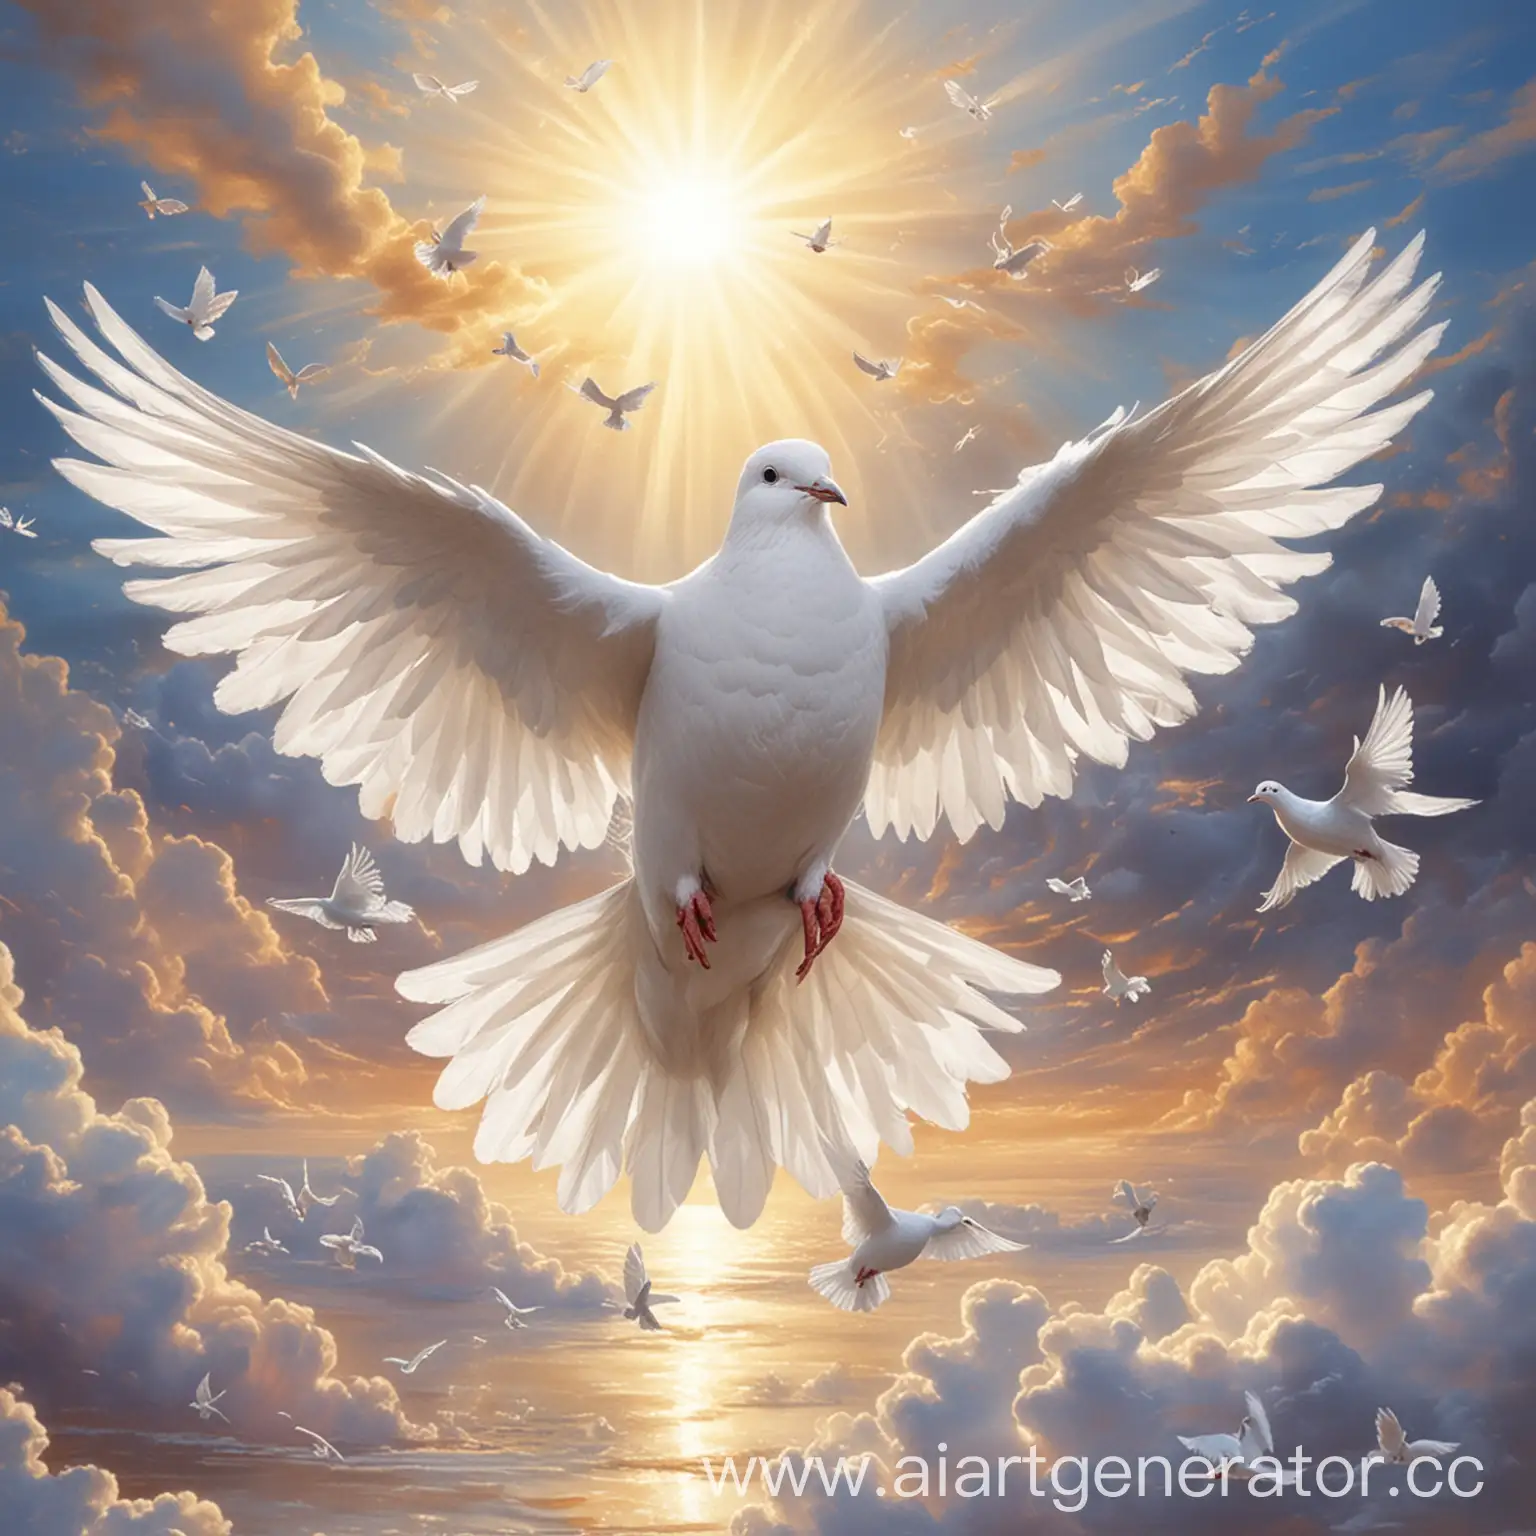 Картинка по теме "На крыльях добра", голубь с белыми крыльями